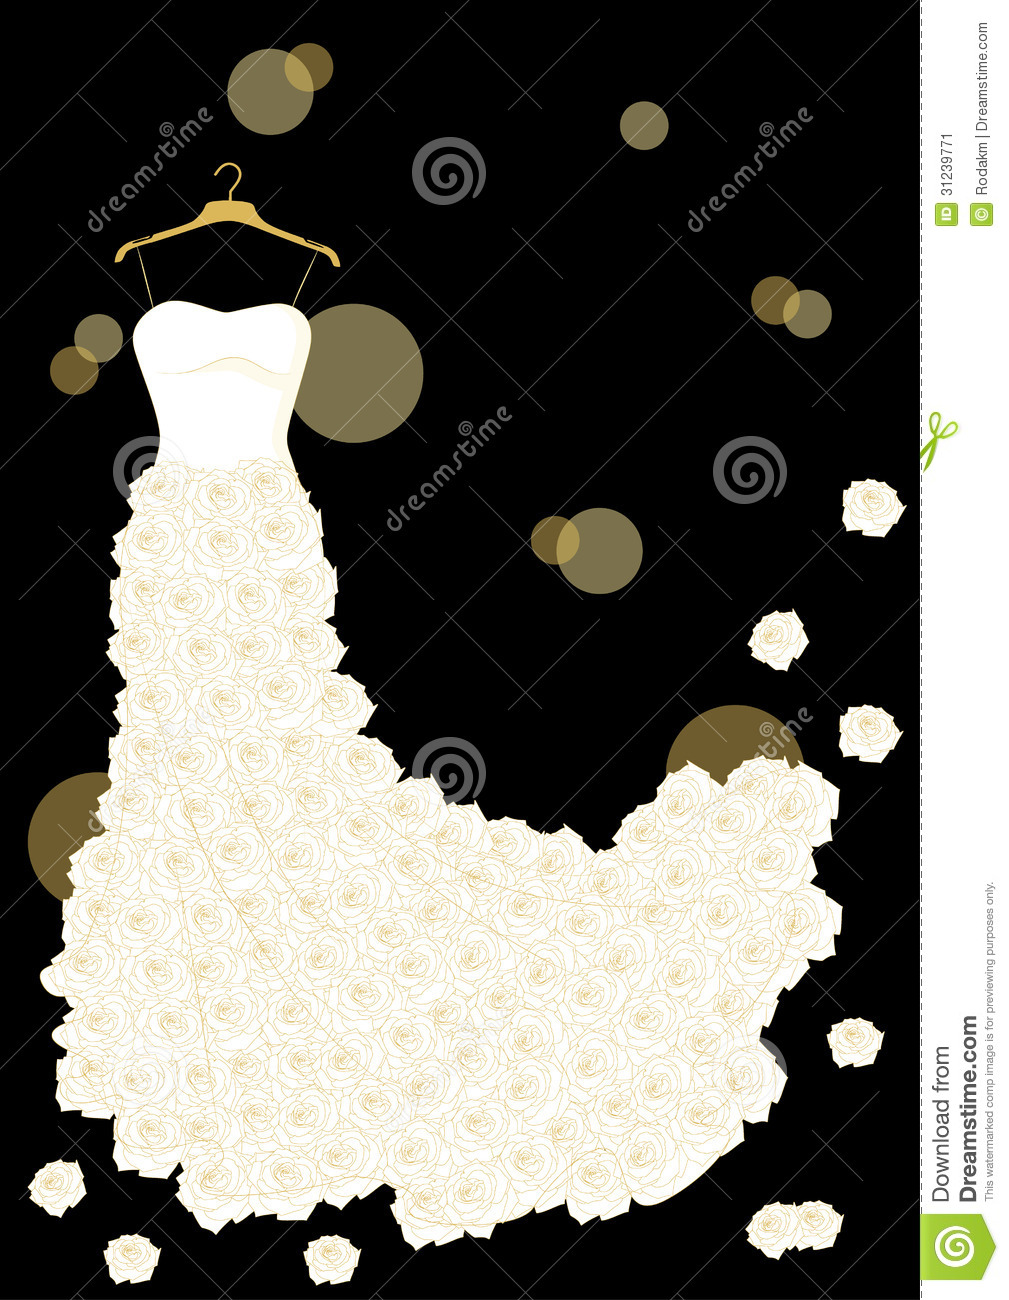 Wedding Dress Stock Image   Image  31239771